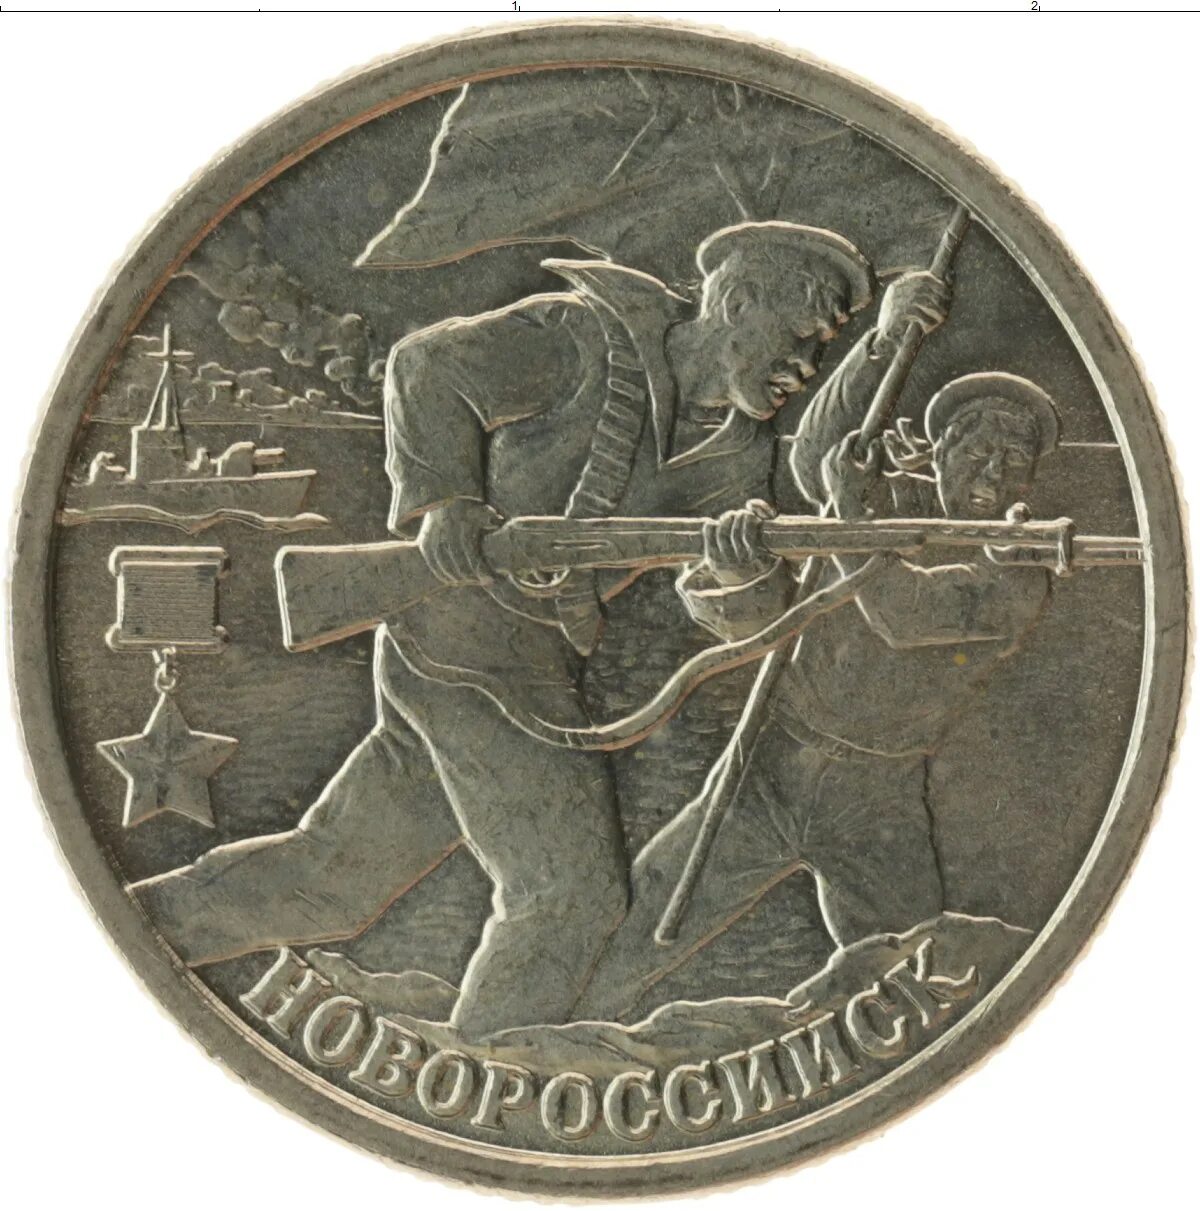 2 Рубля 2000. Два рубля 2000 года. Монета два рубля. Медные 2 рубля. 2 рубля 2000 год стоимость